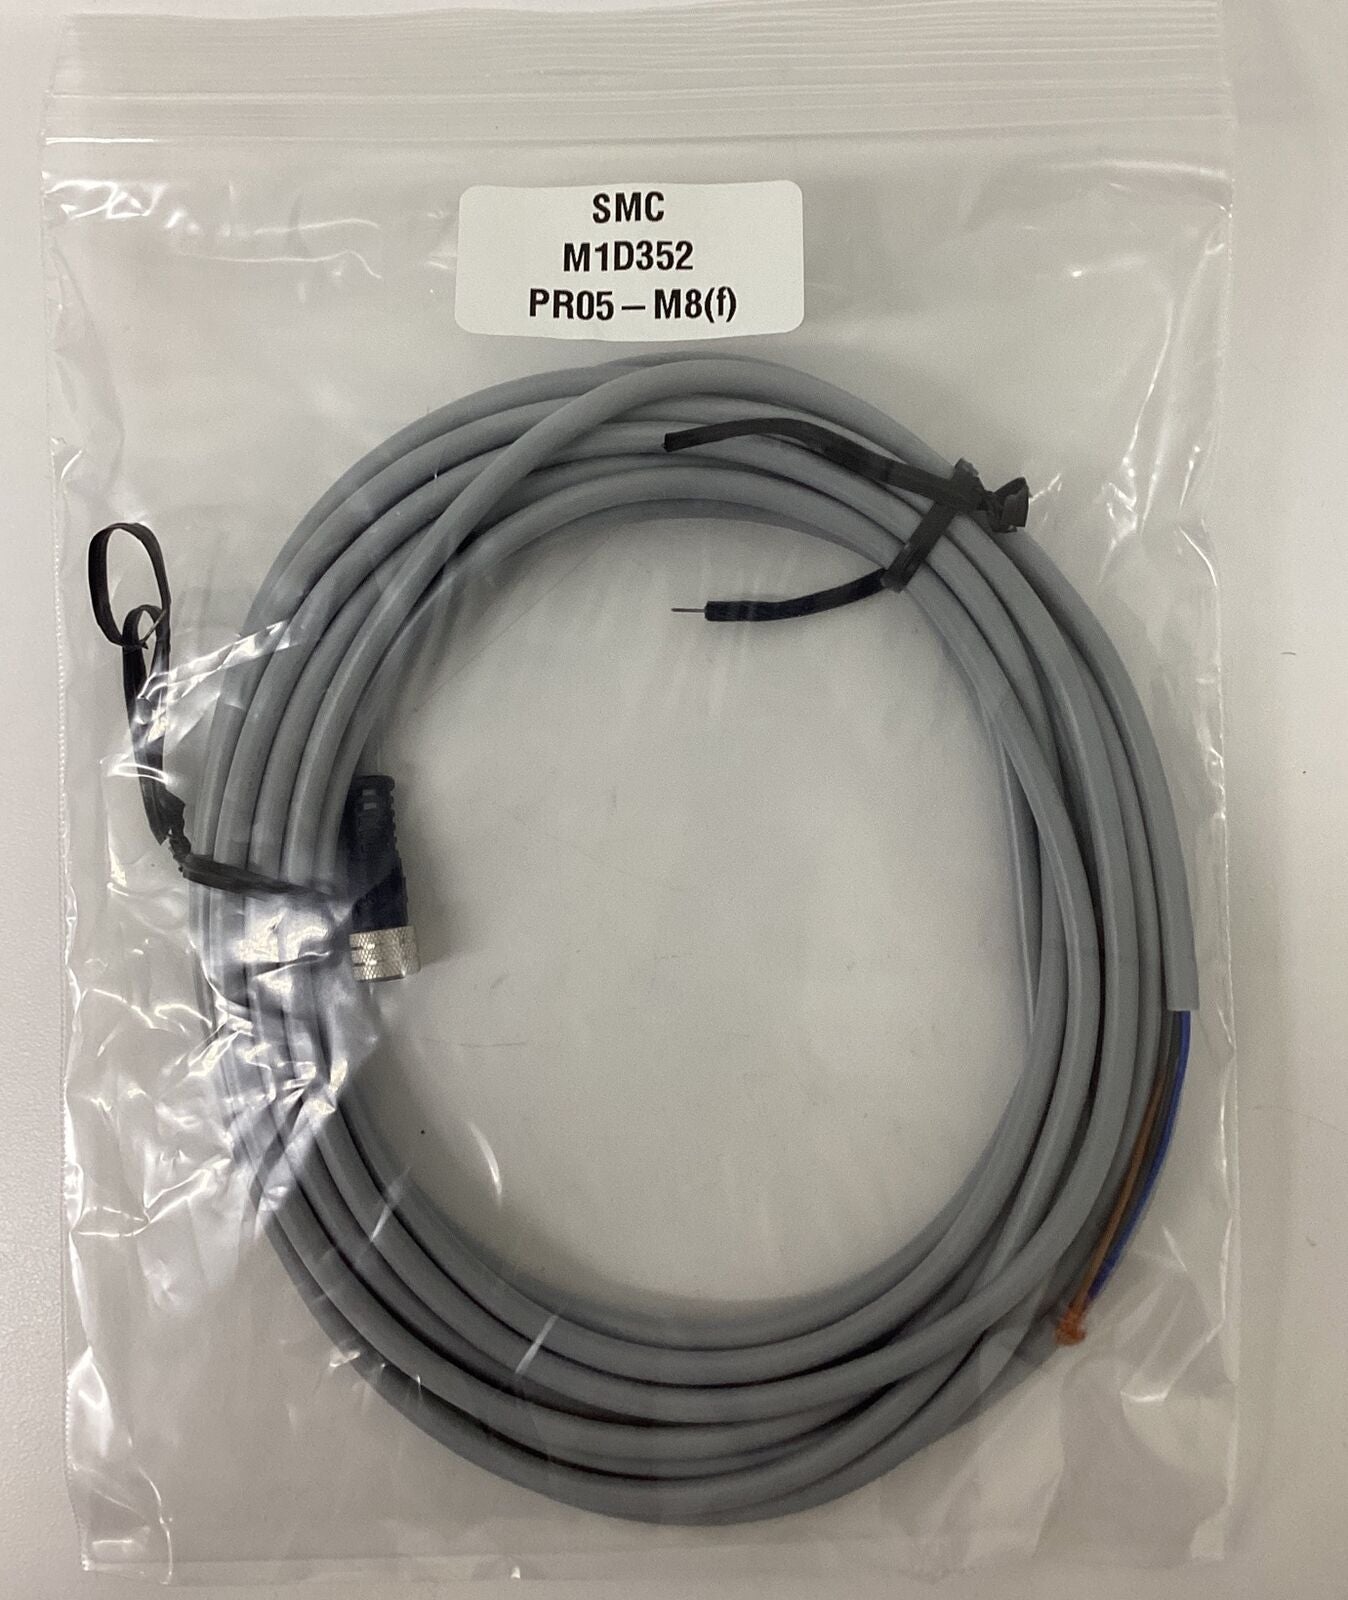 SMC M1D32 / PRO5-M8 M8, Female 3-Wire Sensor Cable 5M (CBL157)